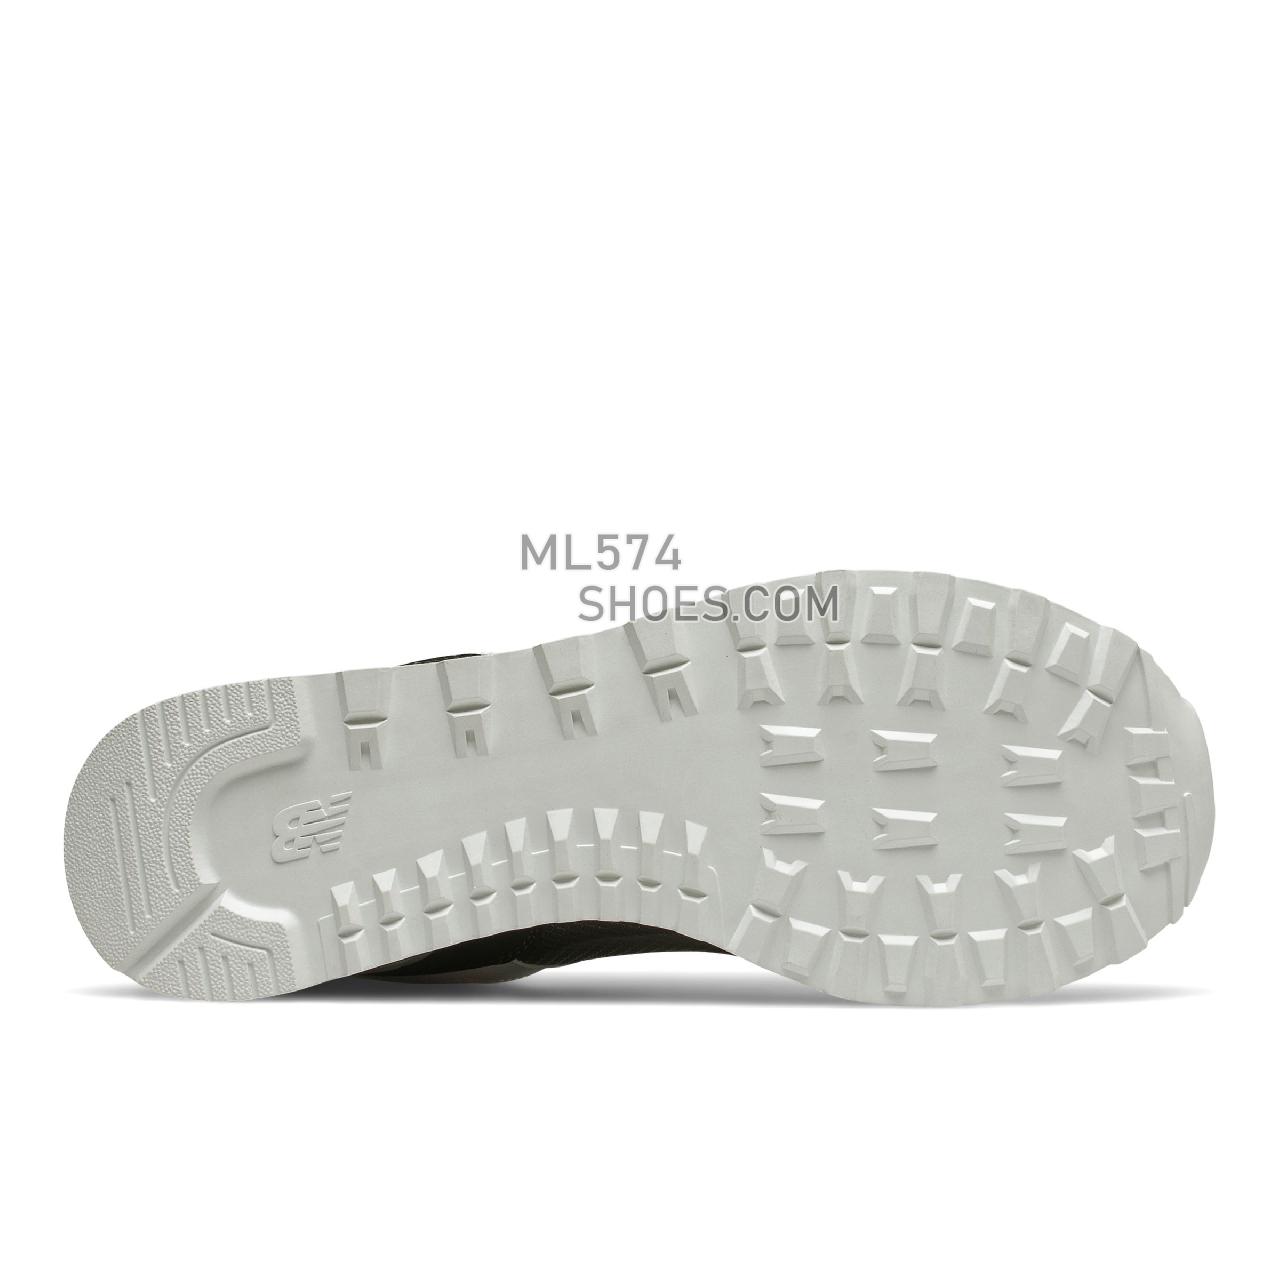 New Balance 574 - Men's Classic Sneakers - Black with Sugar Melon - ML574IL2